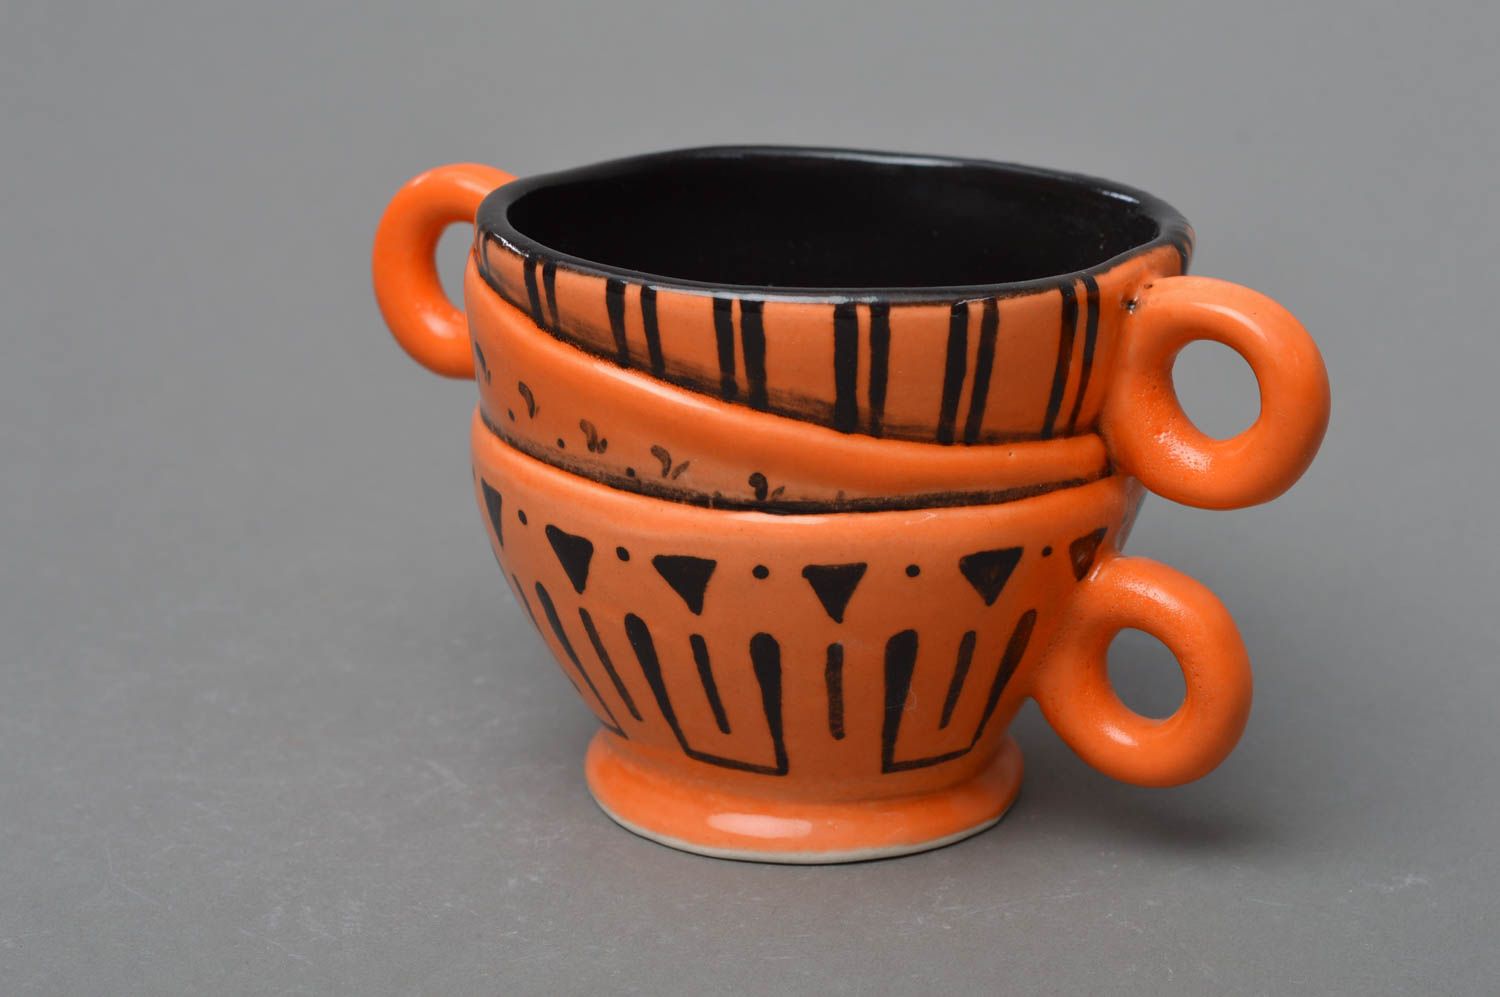 Оранжевая чашка из фарфора с орнаментом ручной работы расписанная глазурью фото 1